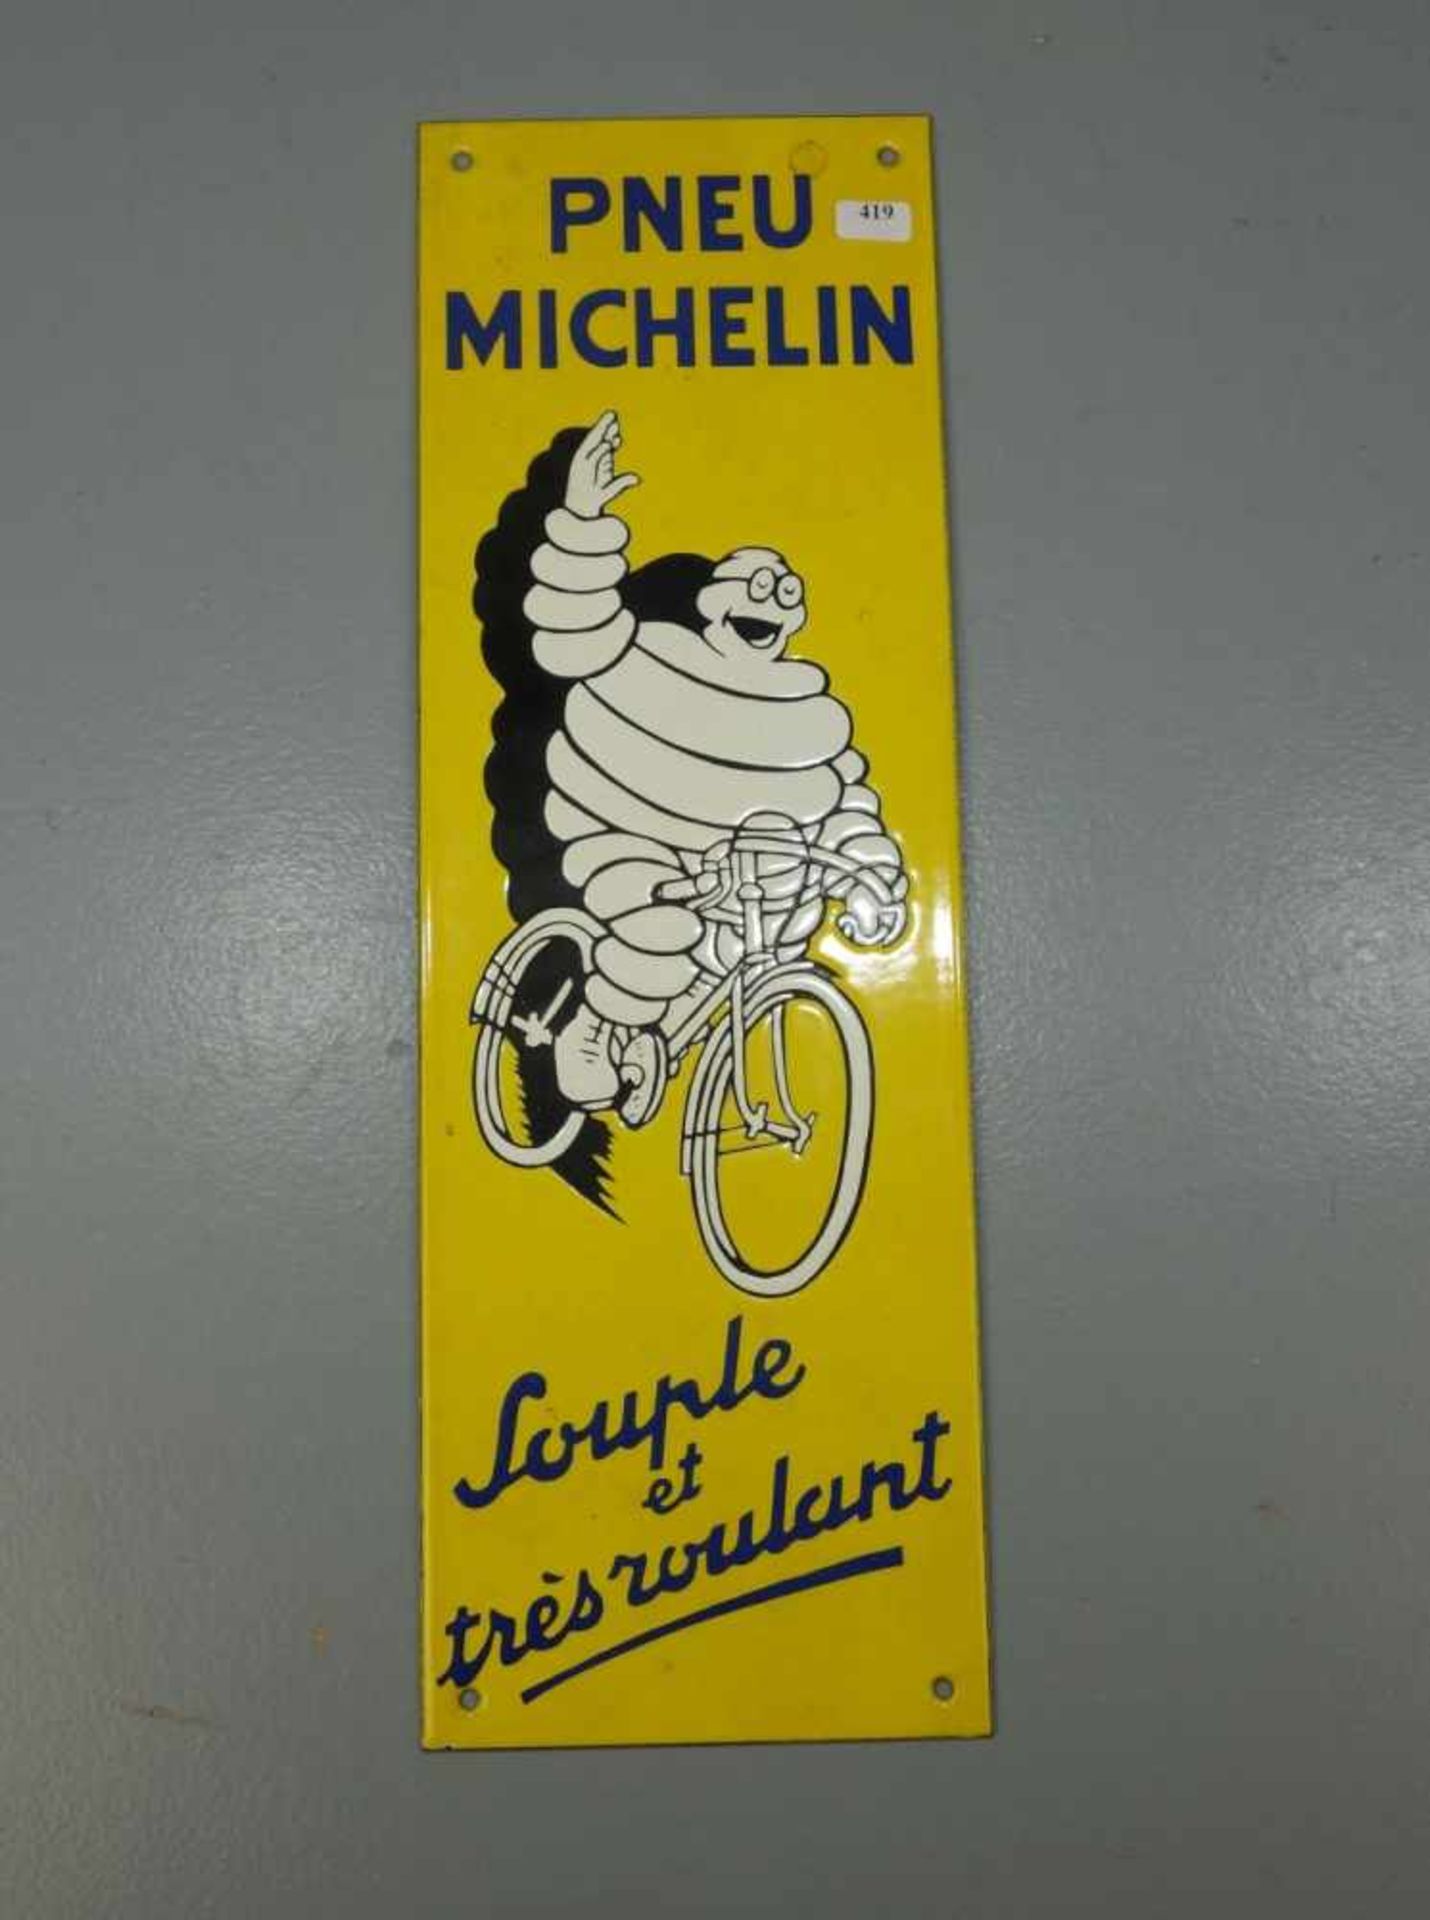 EMAILLESCHILD / BLECHSCHILD / WERBESCHILD: "Pneu Michelin", rechteckig, emailliert. Schild zeigt das